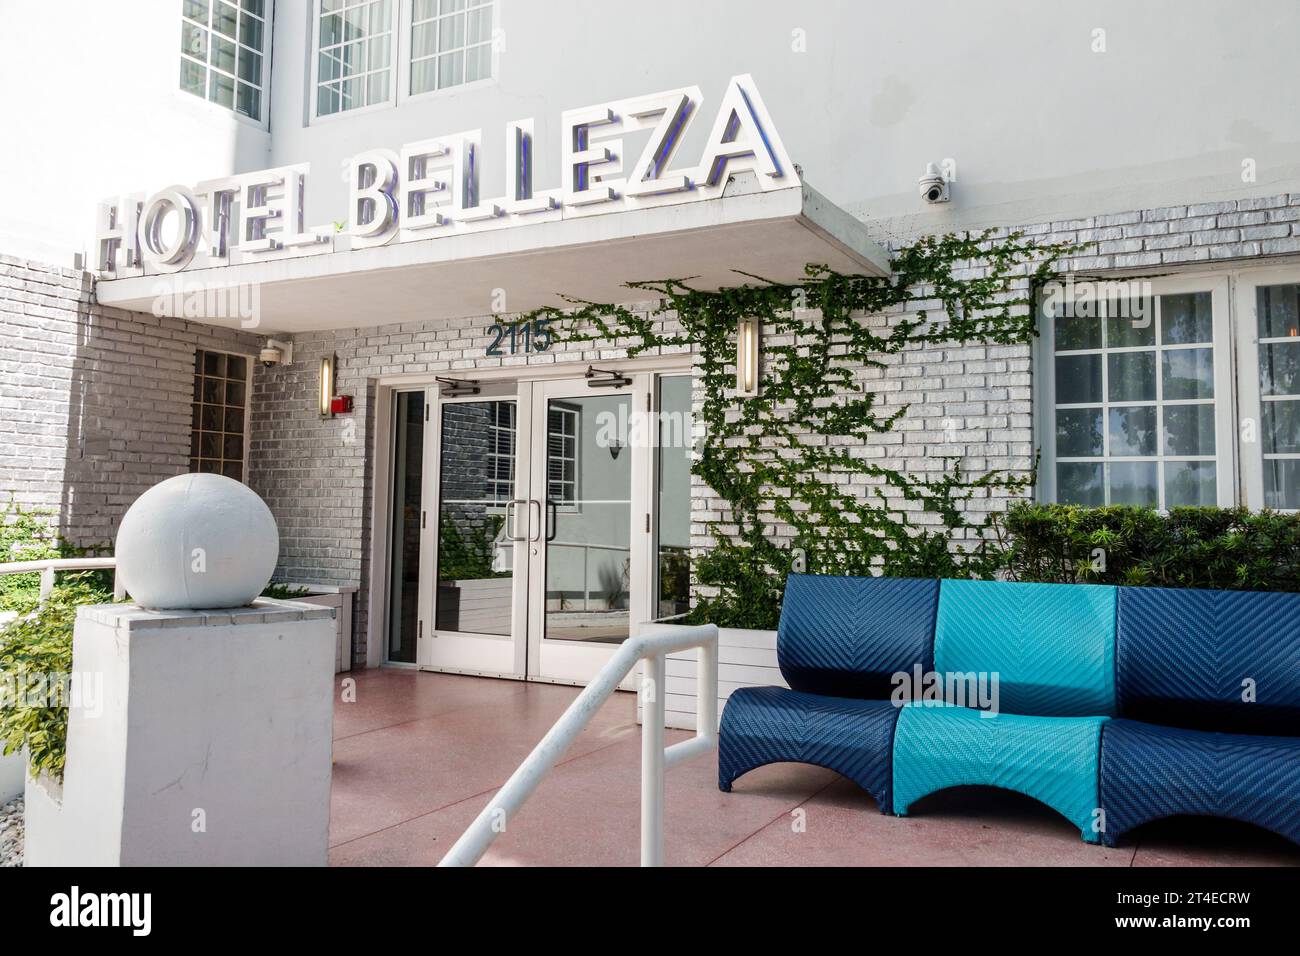 Miami Beach Florida, Außenfassade, Gebäude Vordereingang Hotel, Hotel Belleza Schild, Hotels Motels Unternehmen Stockfoto